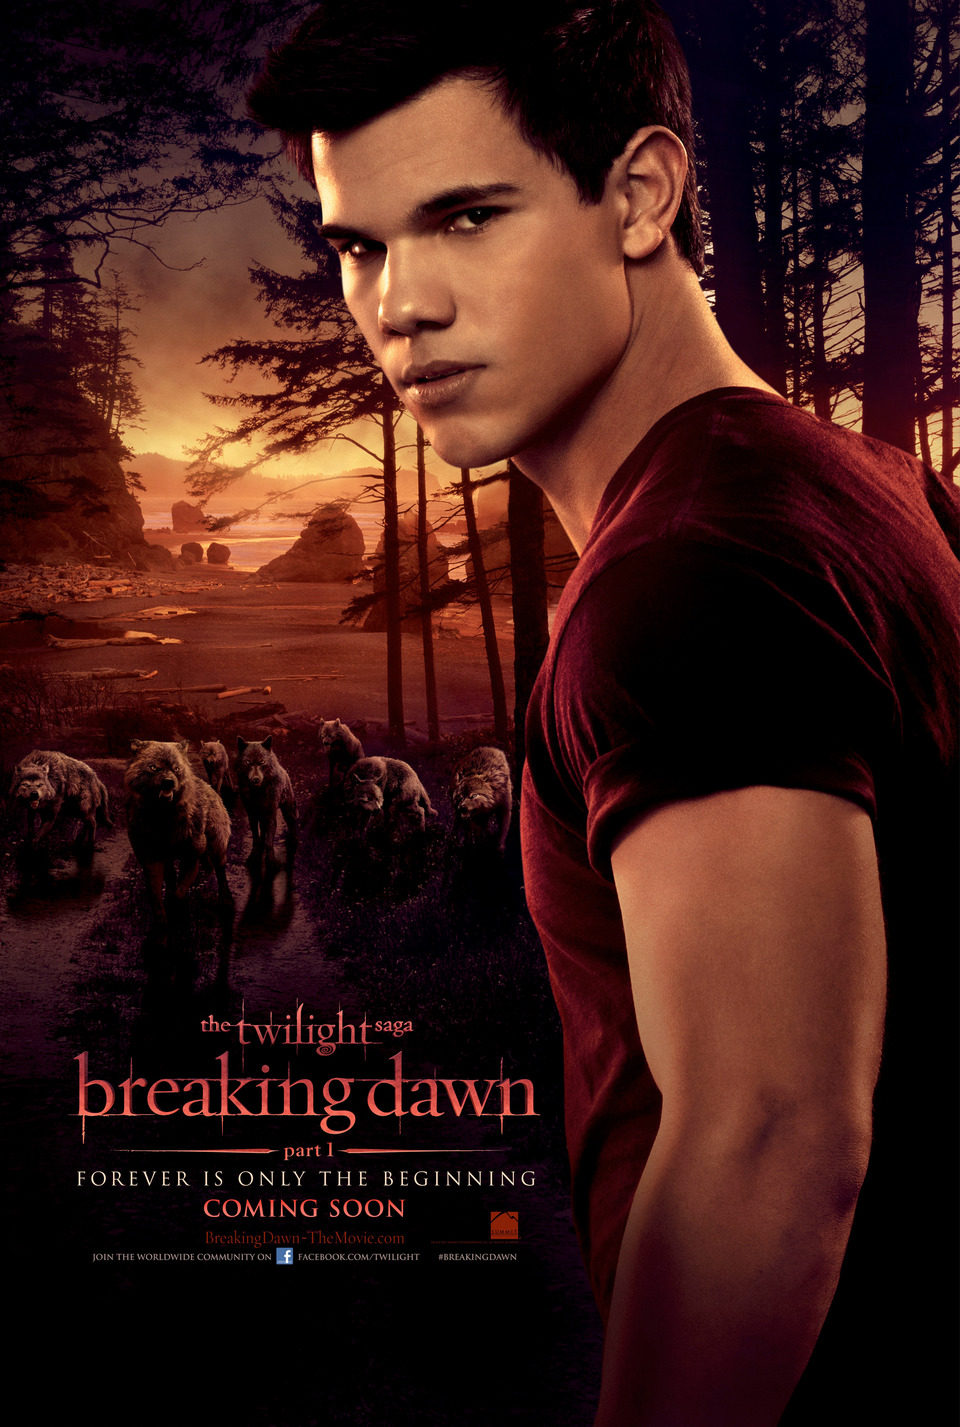 EEUU #3 poster for The Twilight Saga: Breaking Dawn - Part 1